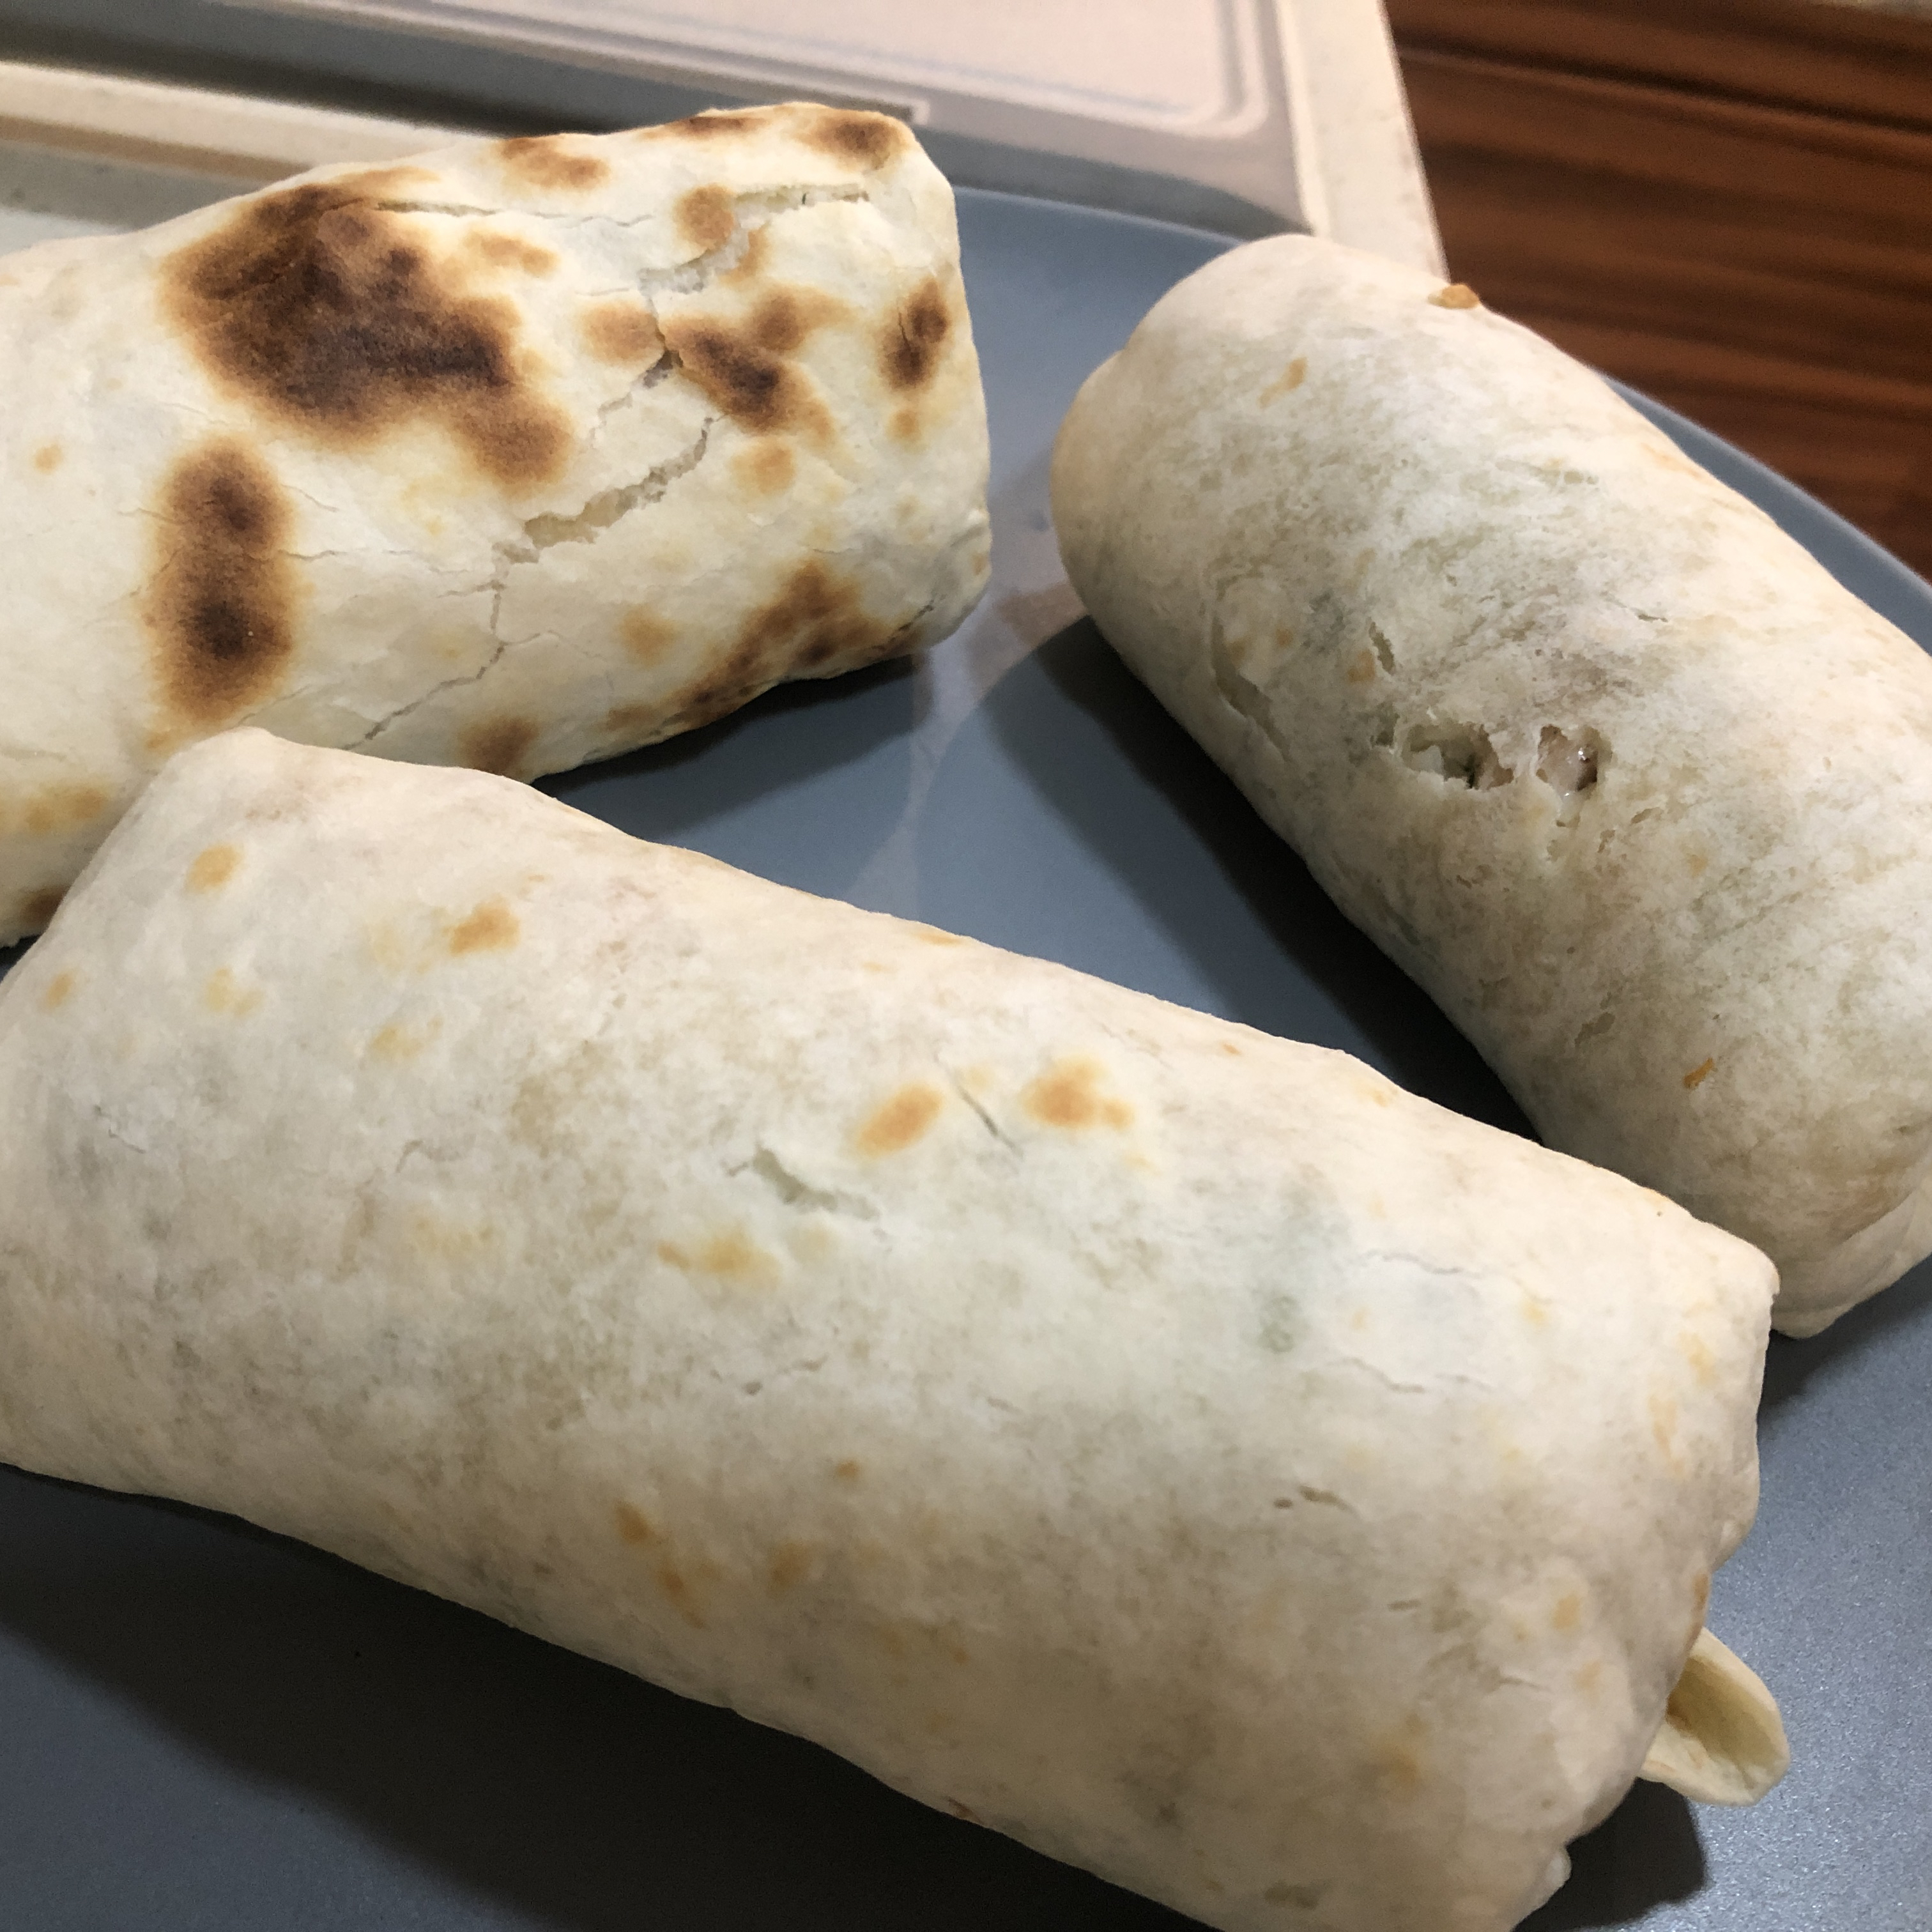 Takeout Burritos